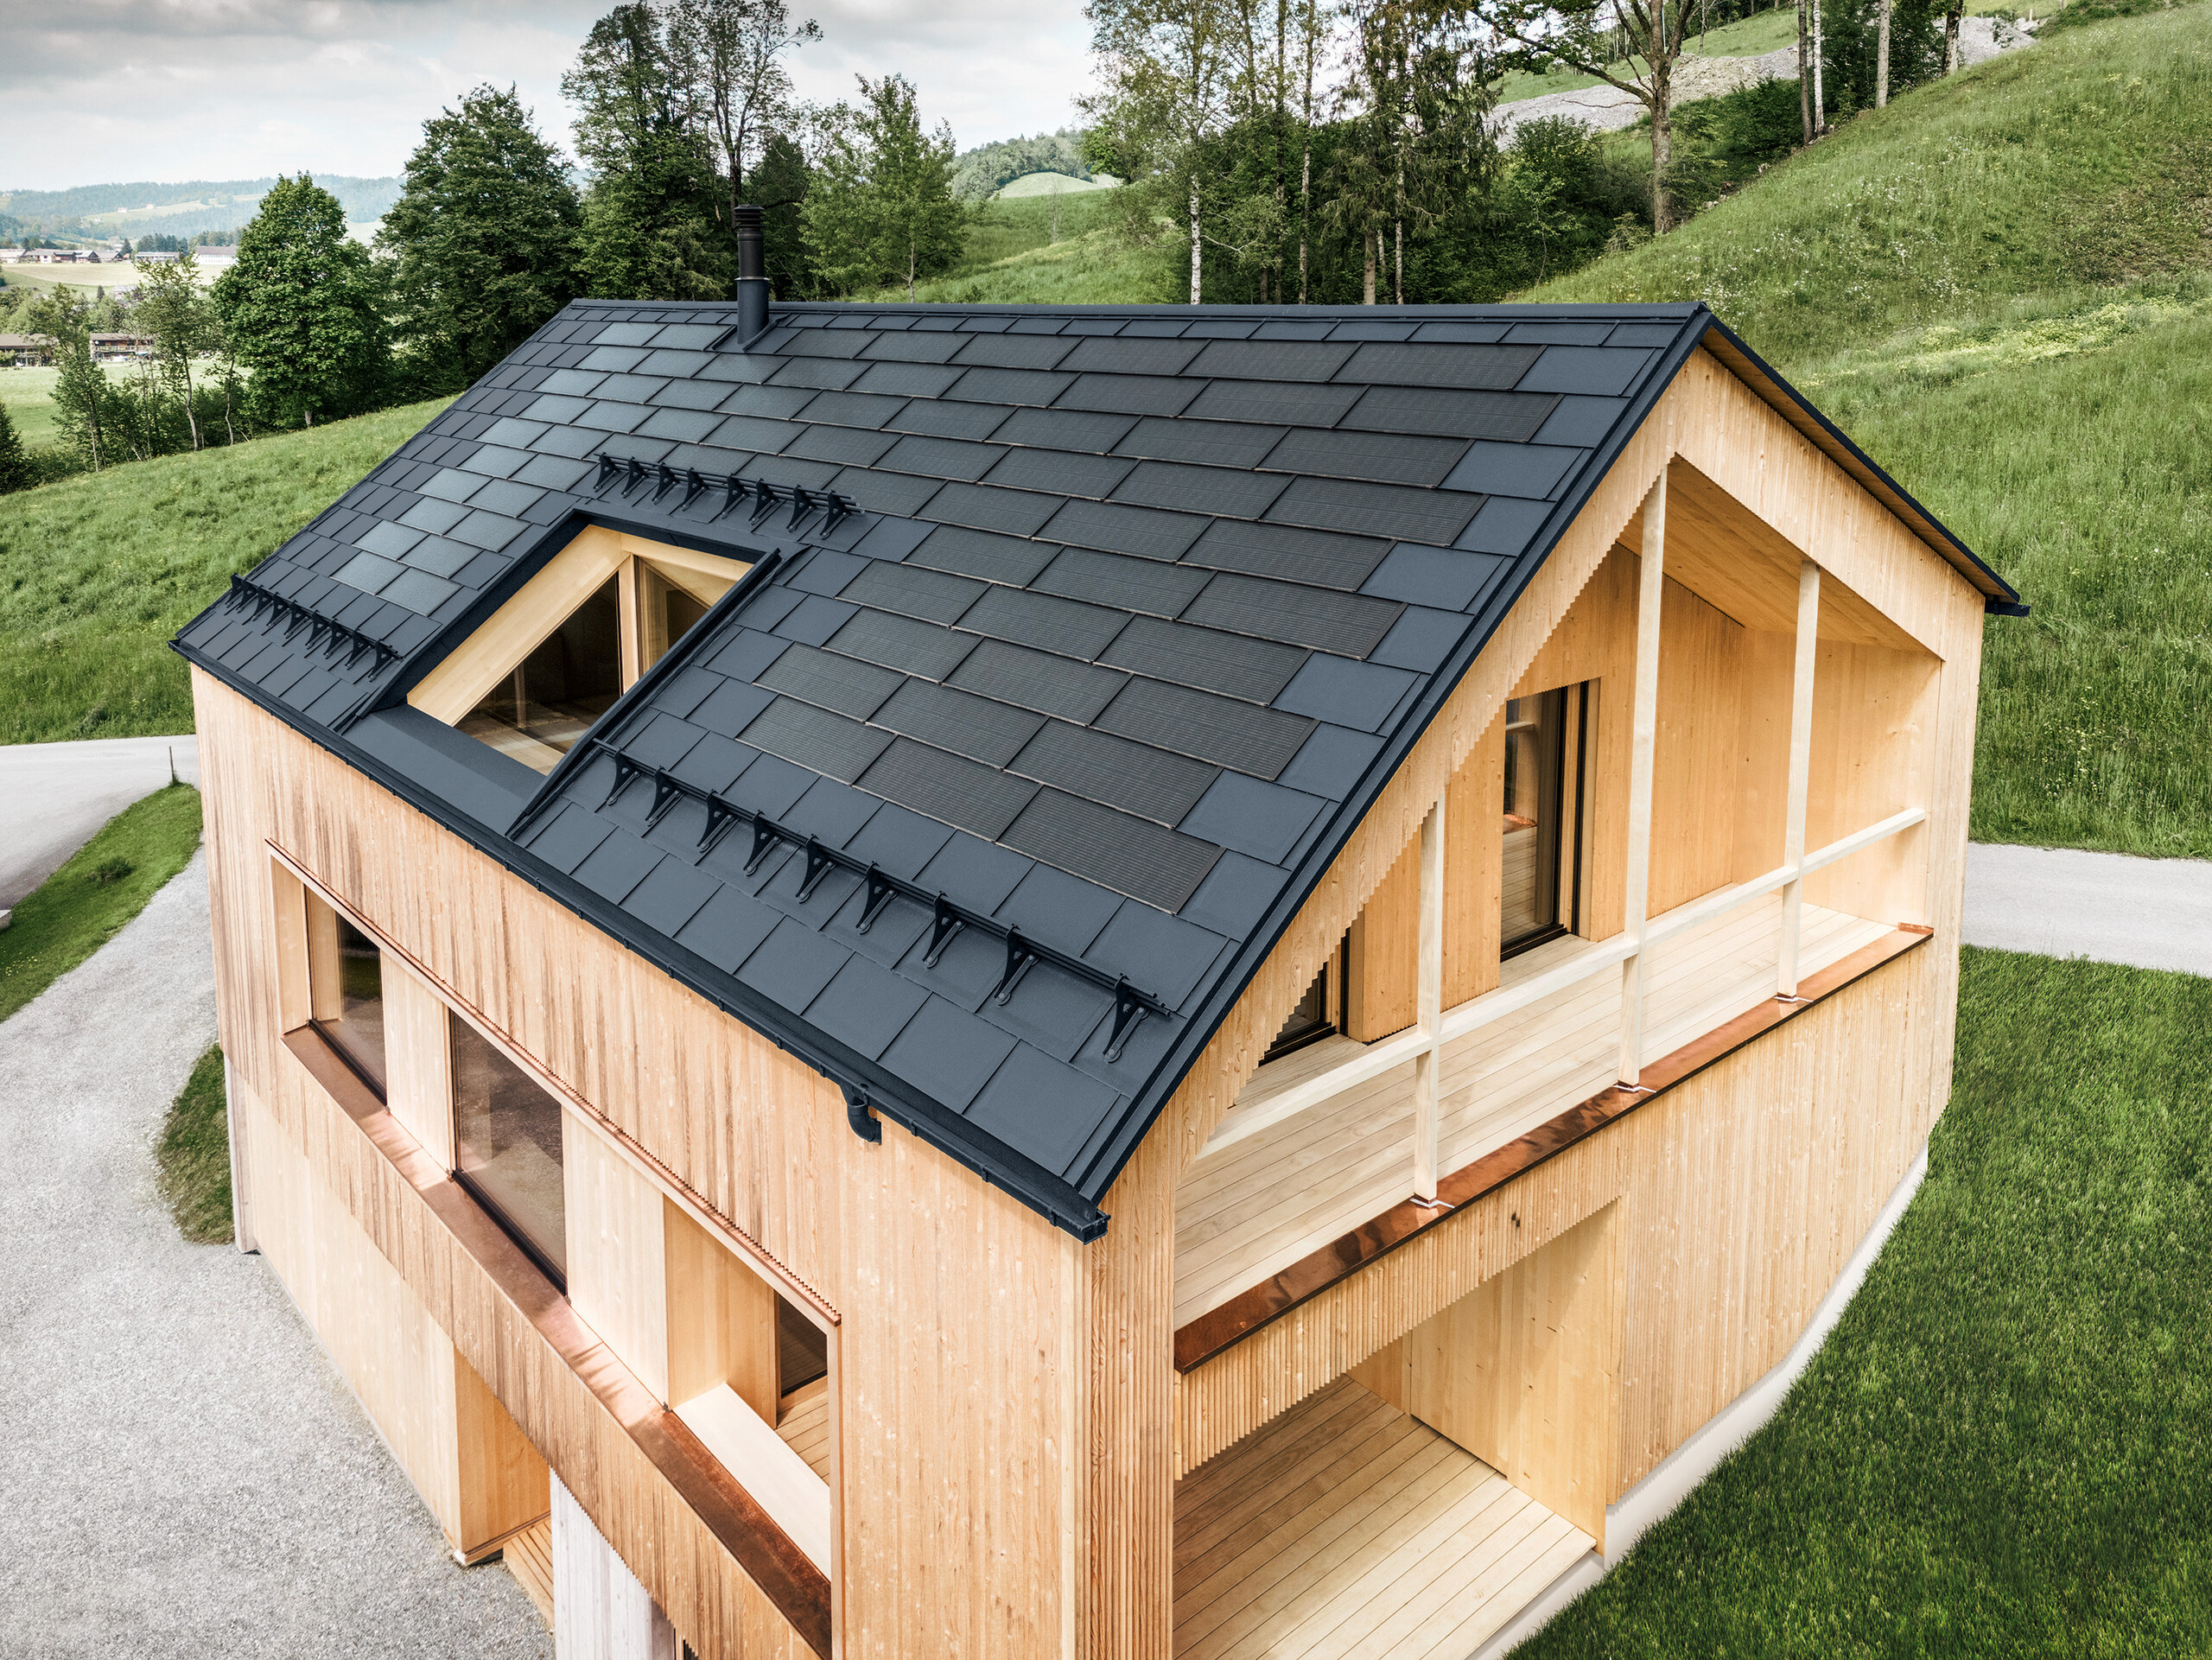 Casa indipendente nel villaggio austriaco di Egg con il pannello solare PREFA e il pannello R.16 in antracite, abbinato a una facciata in legno